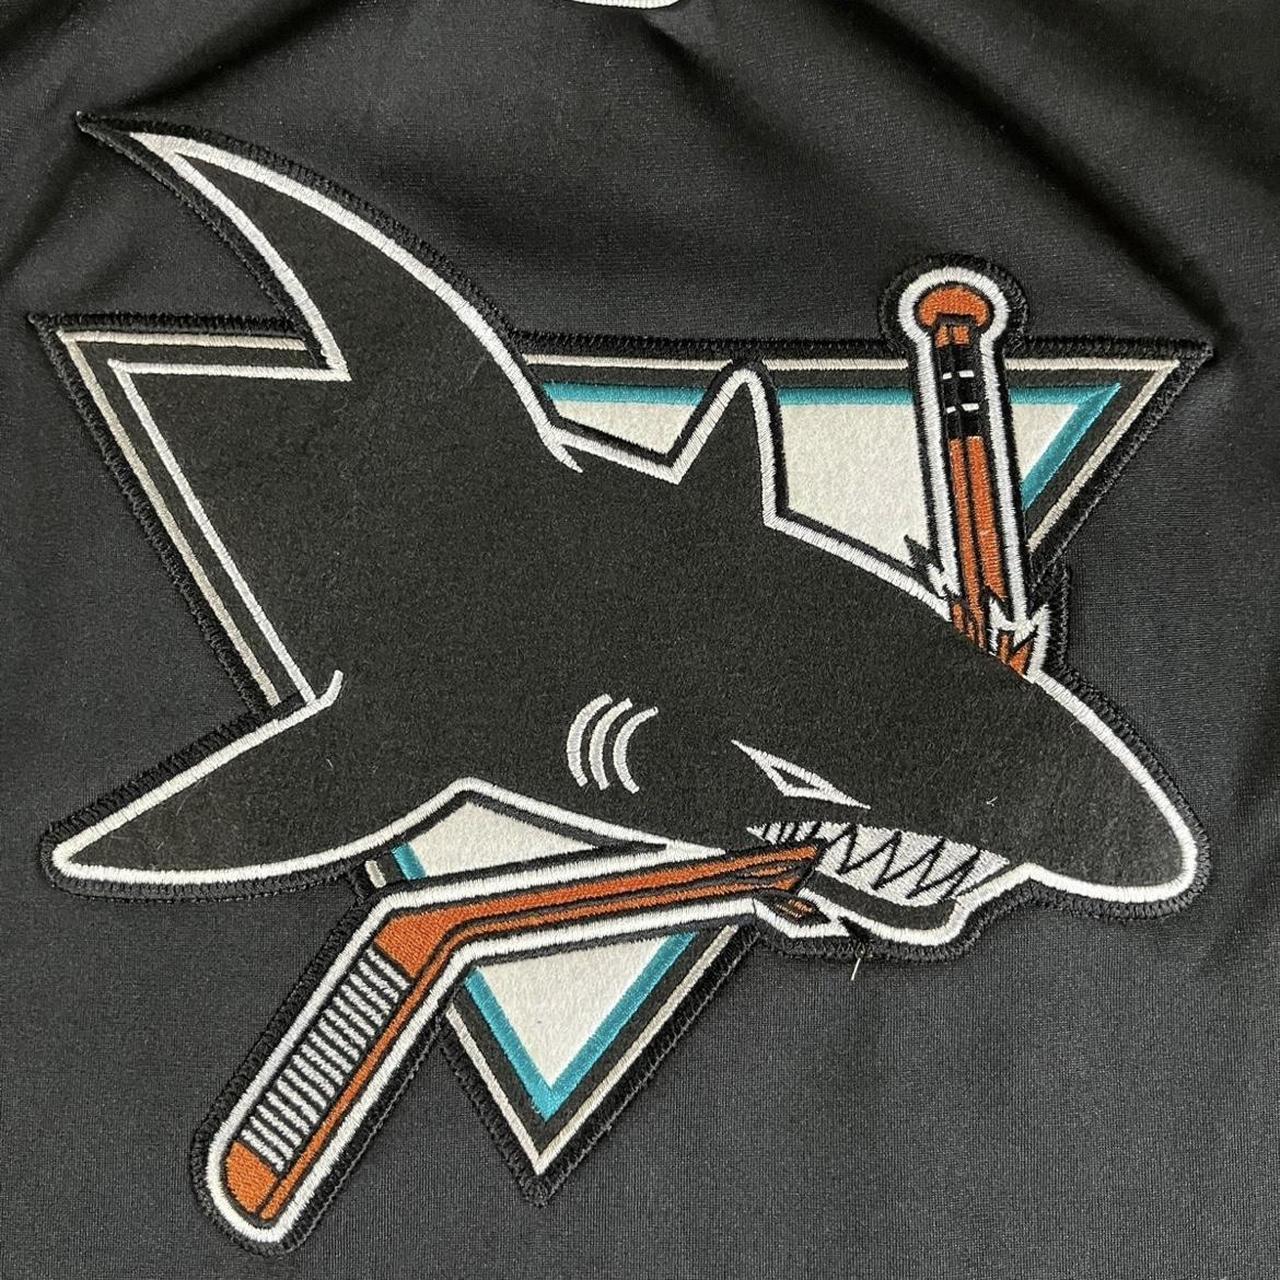 Vintage San Jose Sharks CCM NHL Hockey Jersey USA - Depop